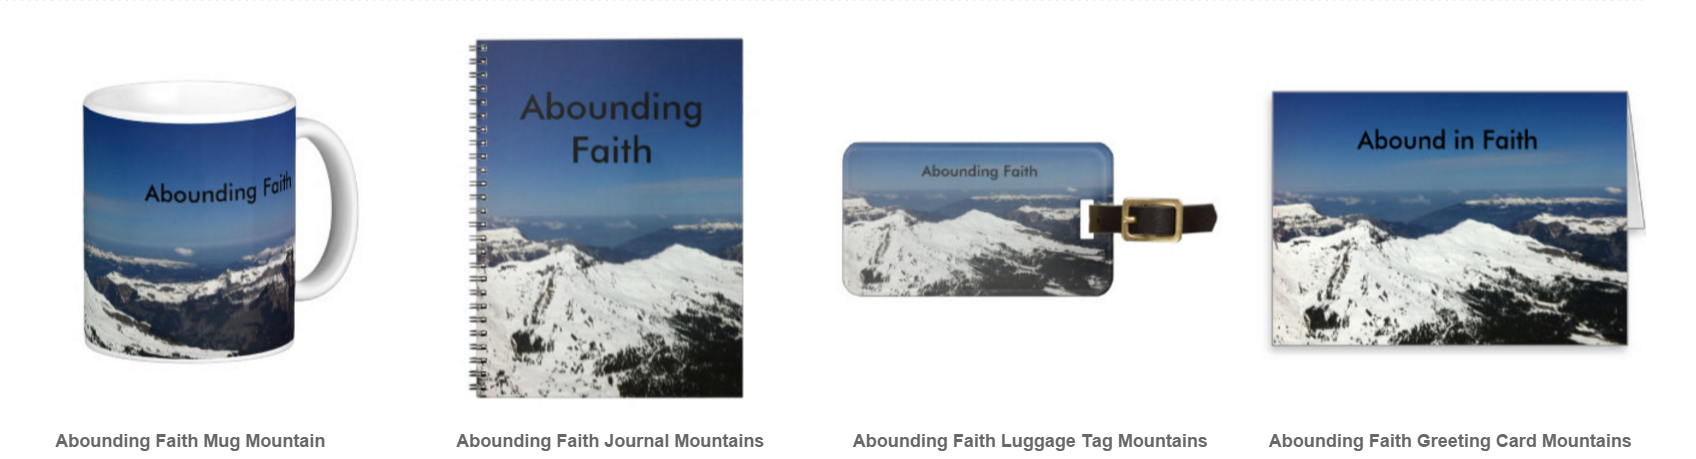 Abounding Faith Mountains